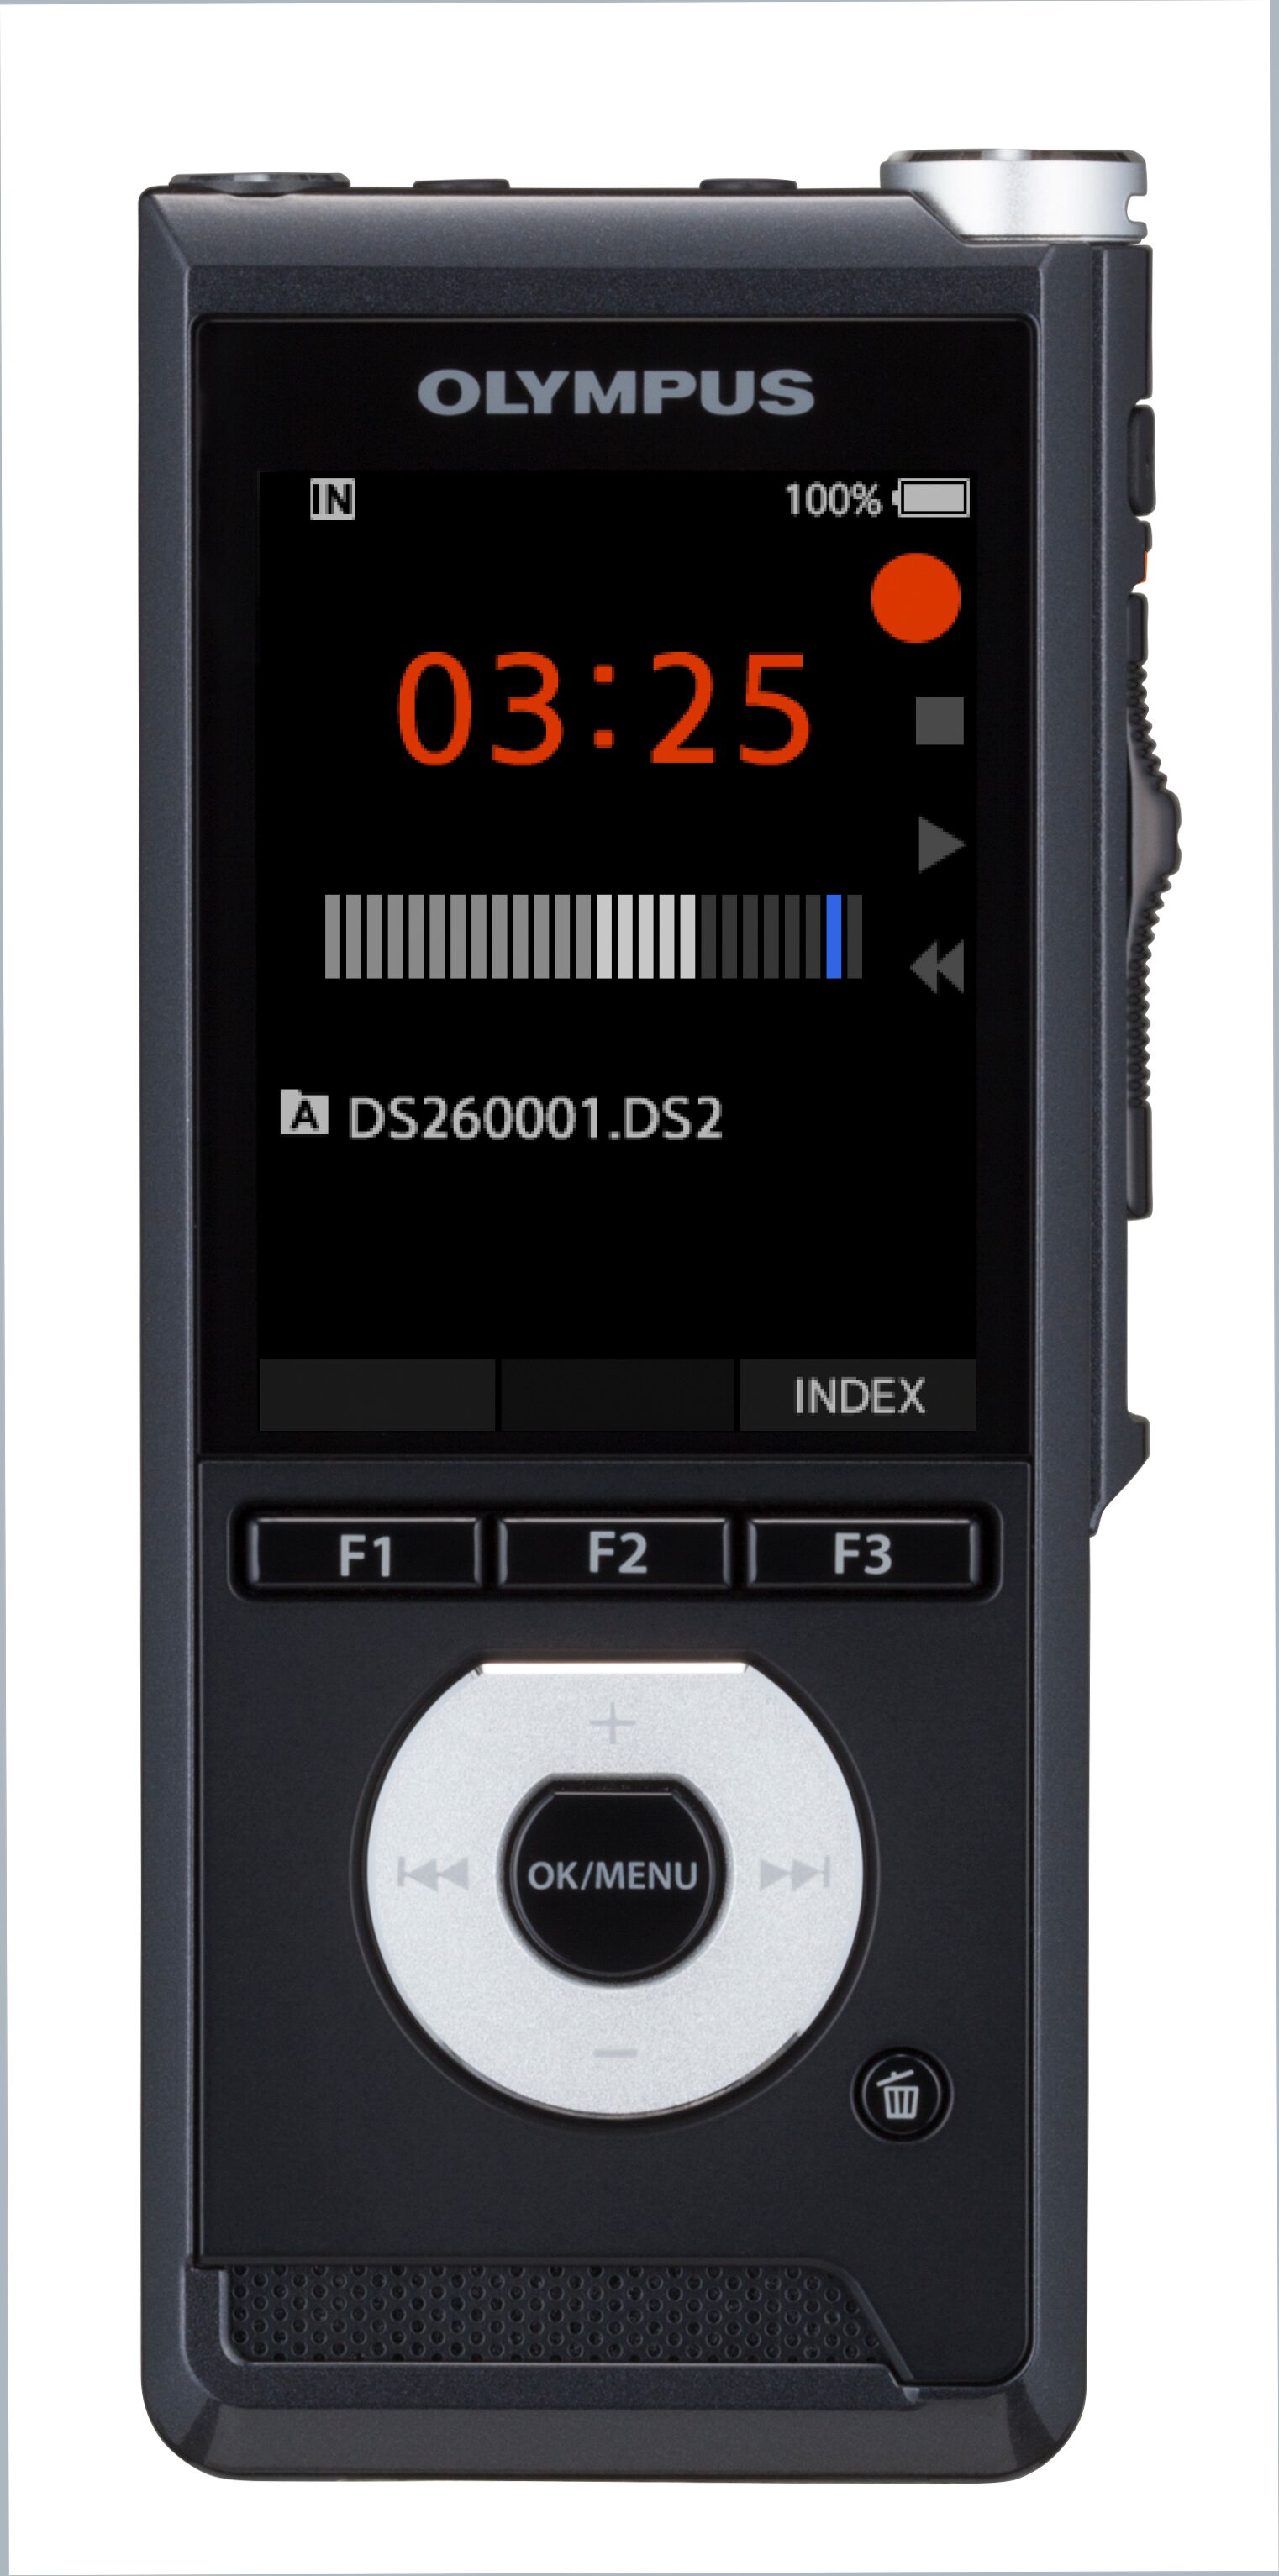 OLY-V741030BU000 OLYMPUS DS-2600 DIGITAL RECORDER